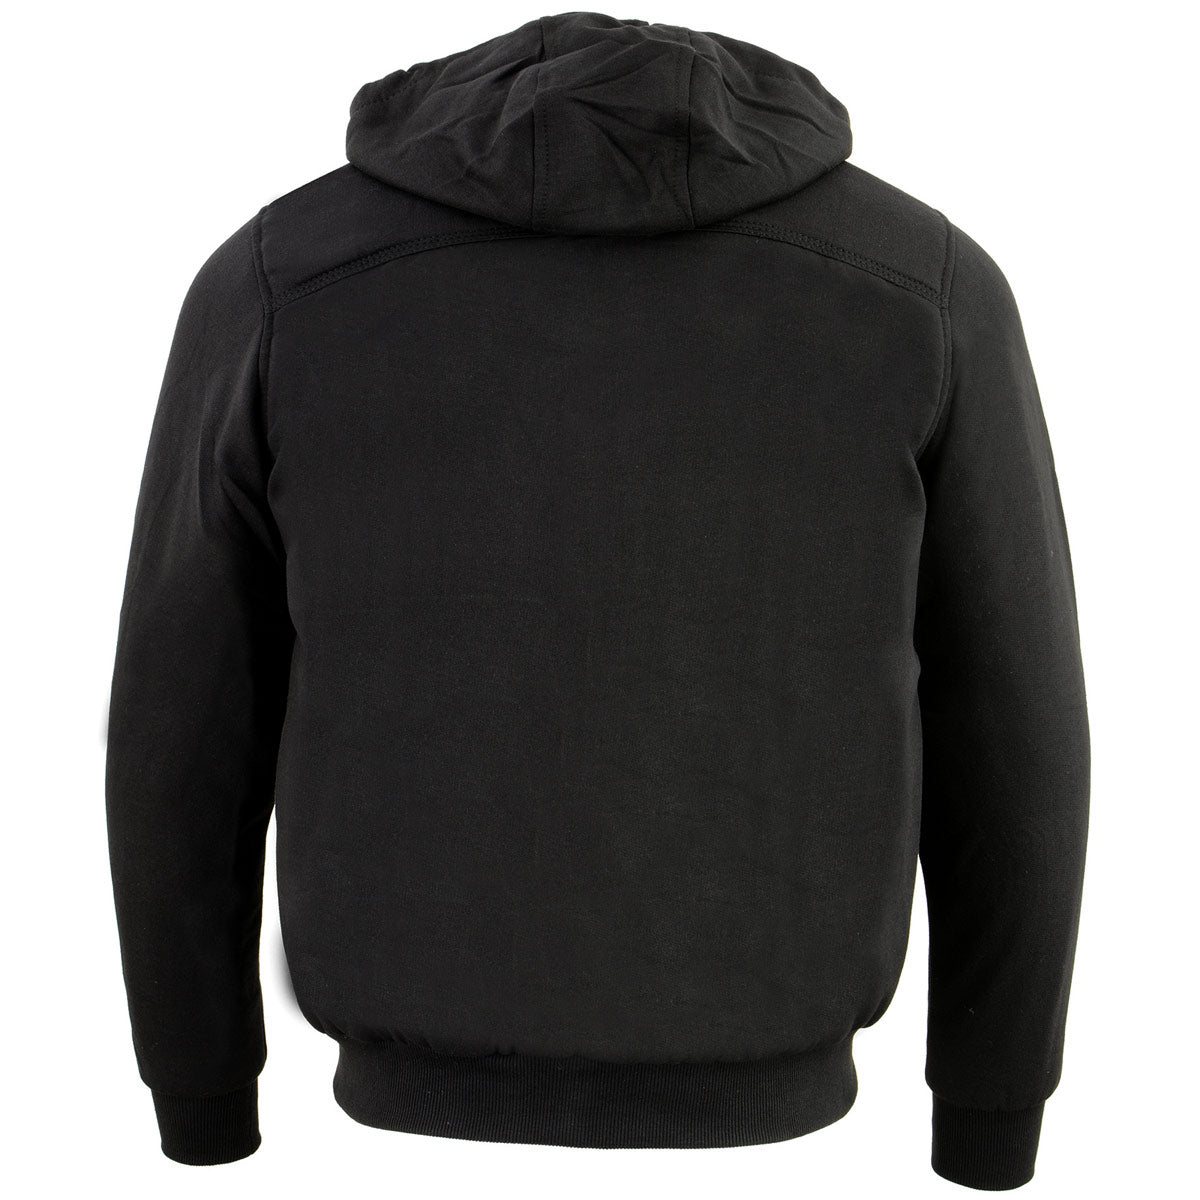 Nexgen Heat NXM1713SET Men's Black 'Fiery' Heated Hoodies - Front Zipper Textile Heated Jacket for Winter w/Battery Pack